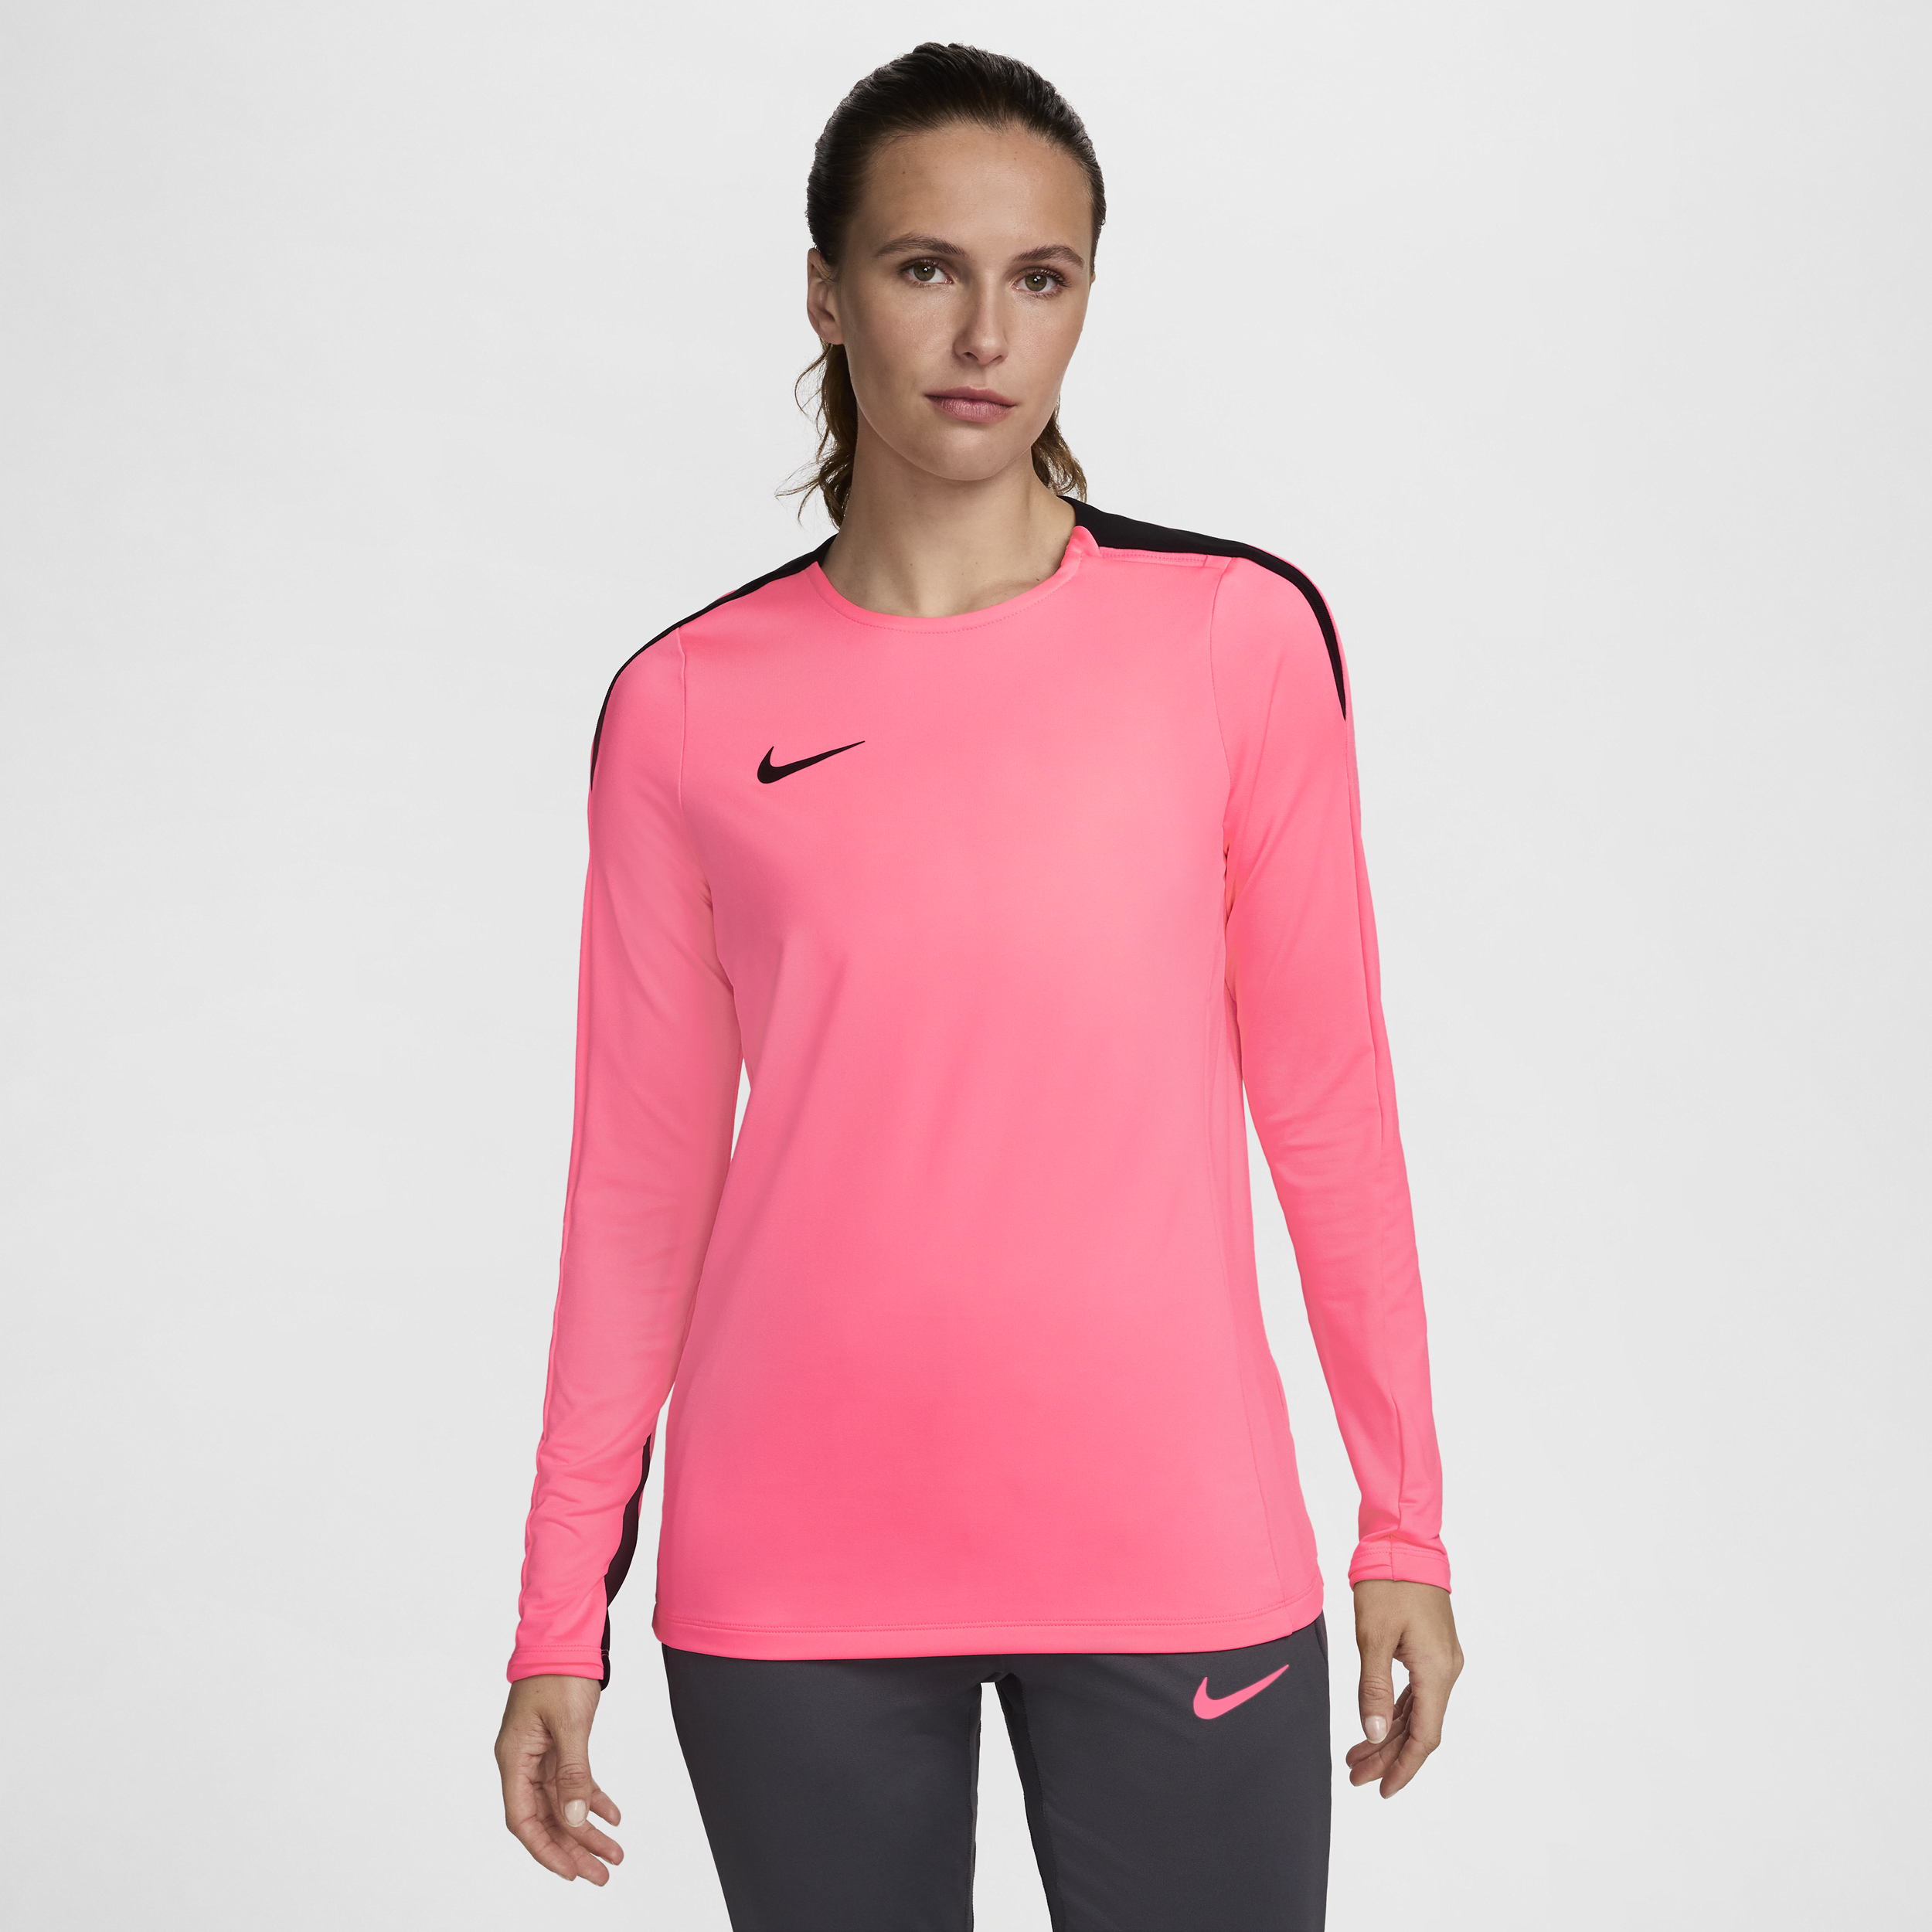 Strike Nike Dri-FIT-fodboldtrøje med rund hals til kvinder - Pink